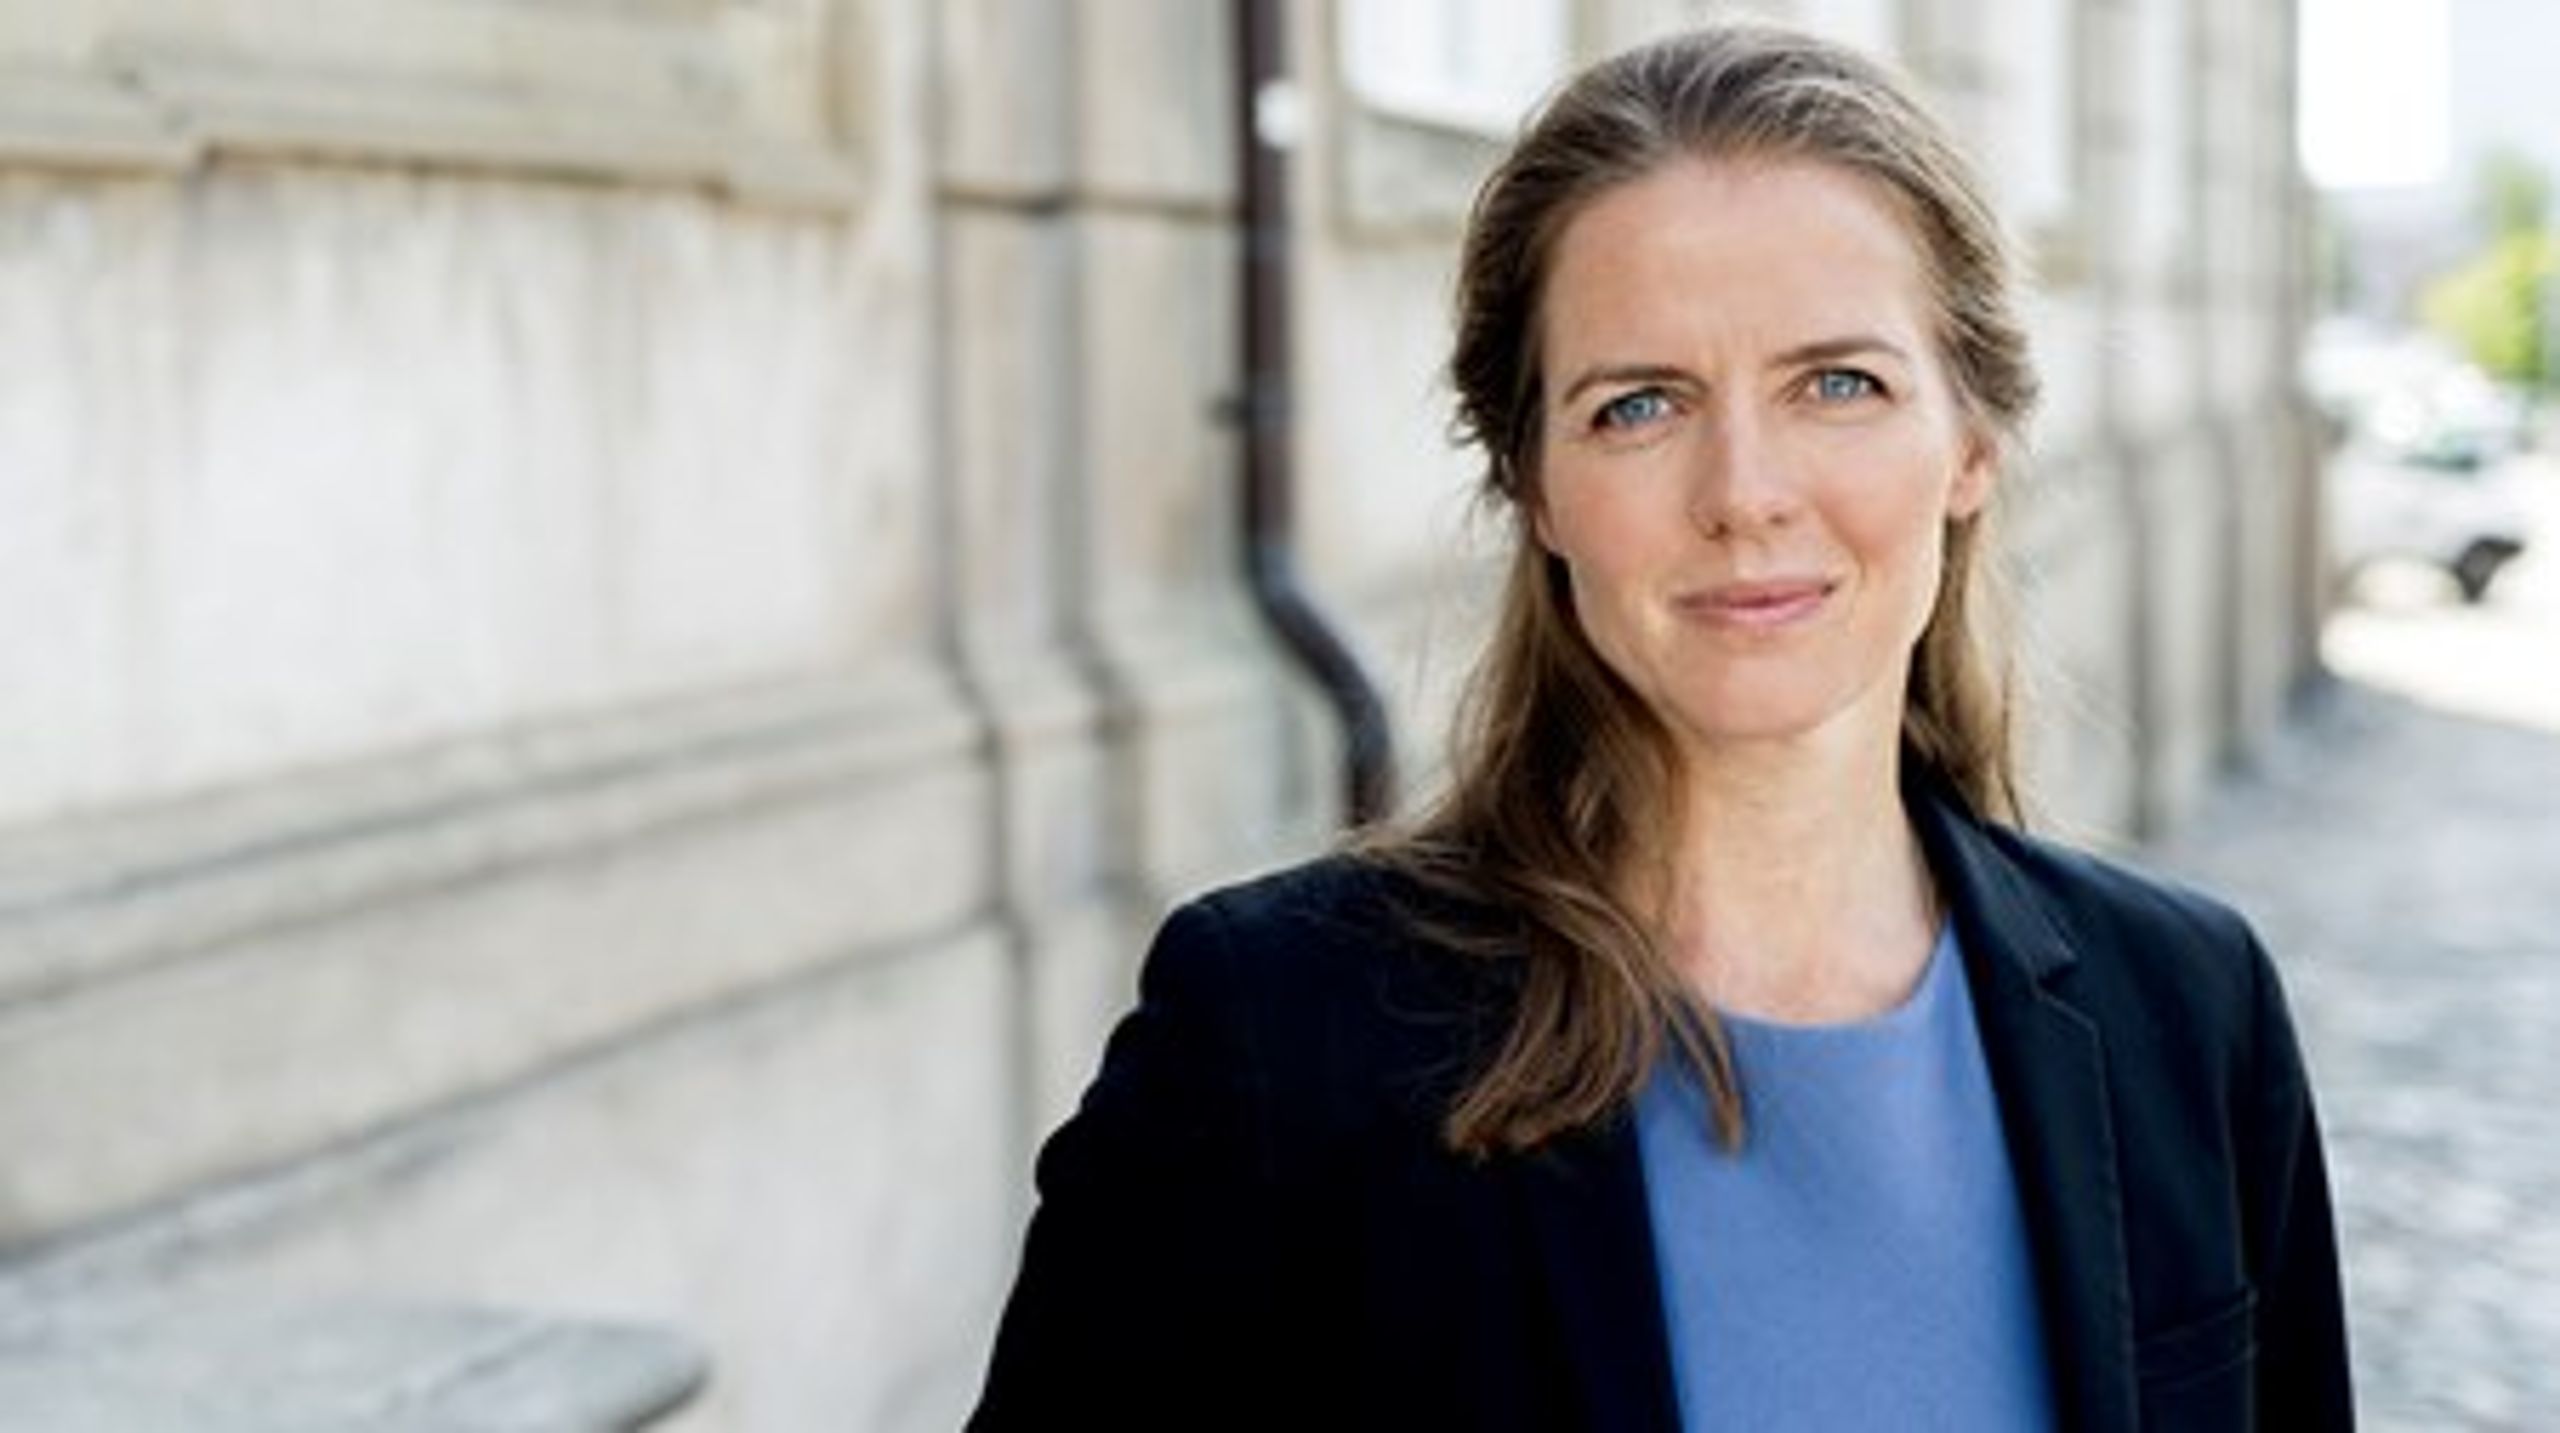 Ligestillingsminister Ellen Trane Nørby præsenterede torsdag regeringens nye udspil på ligestillingsområdet.